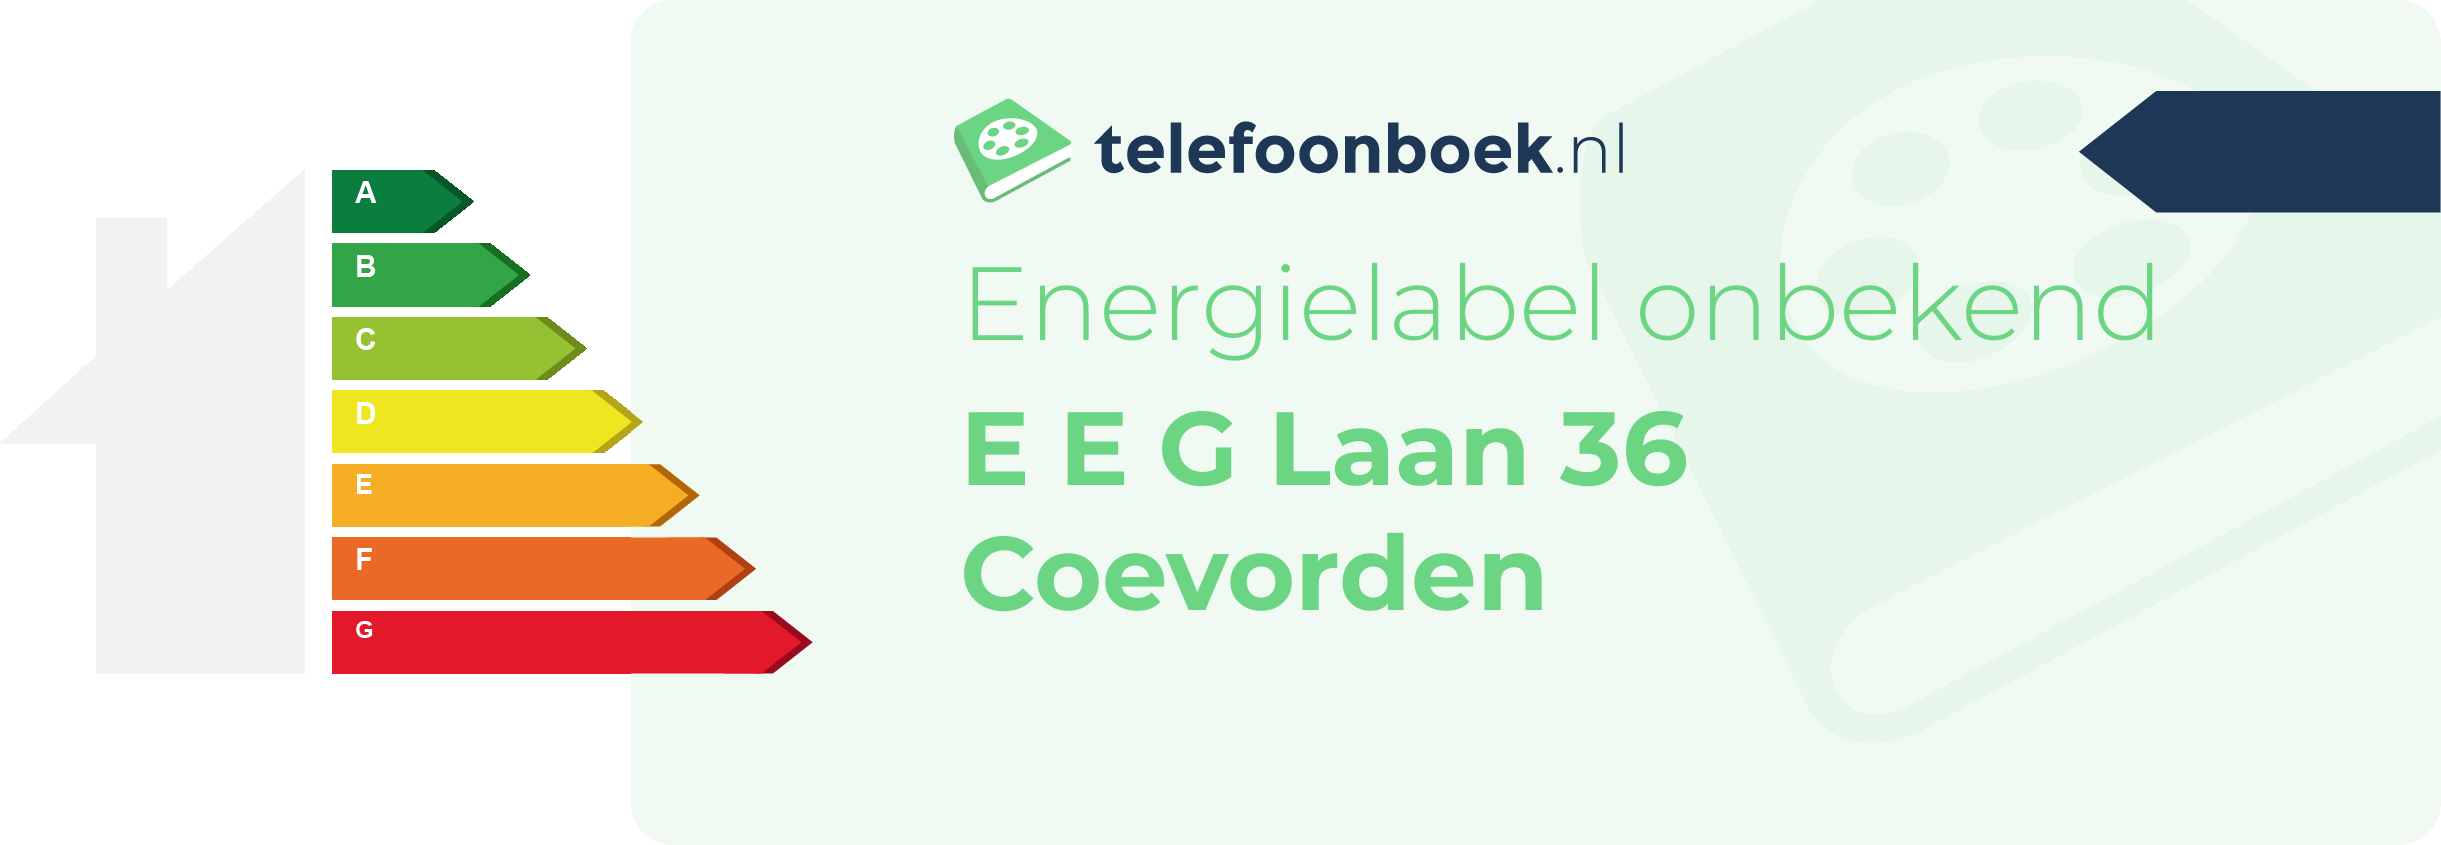 Energielabel E E G Laan 36 Coevorden